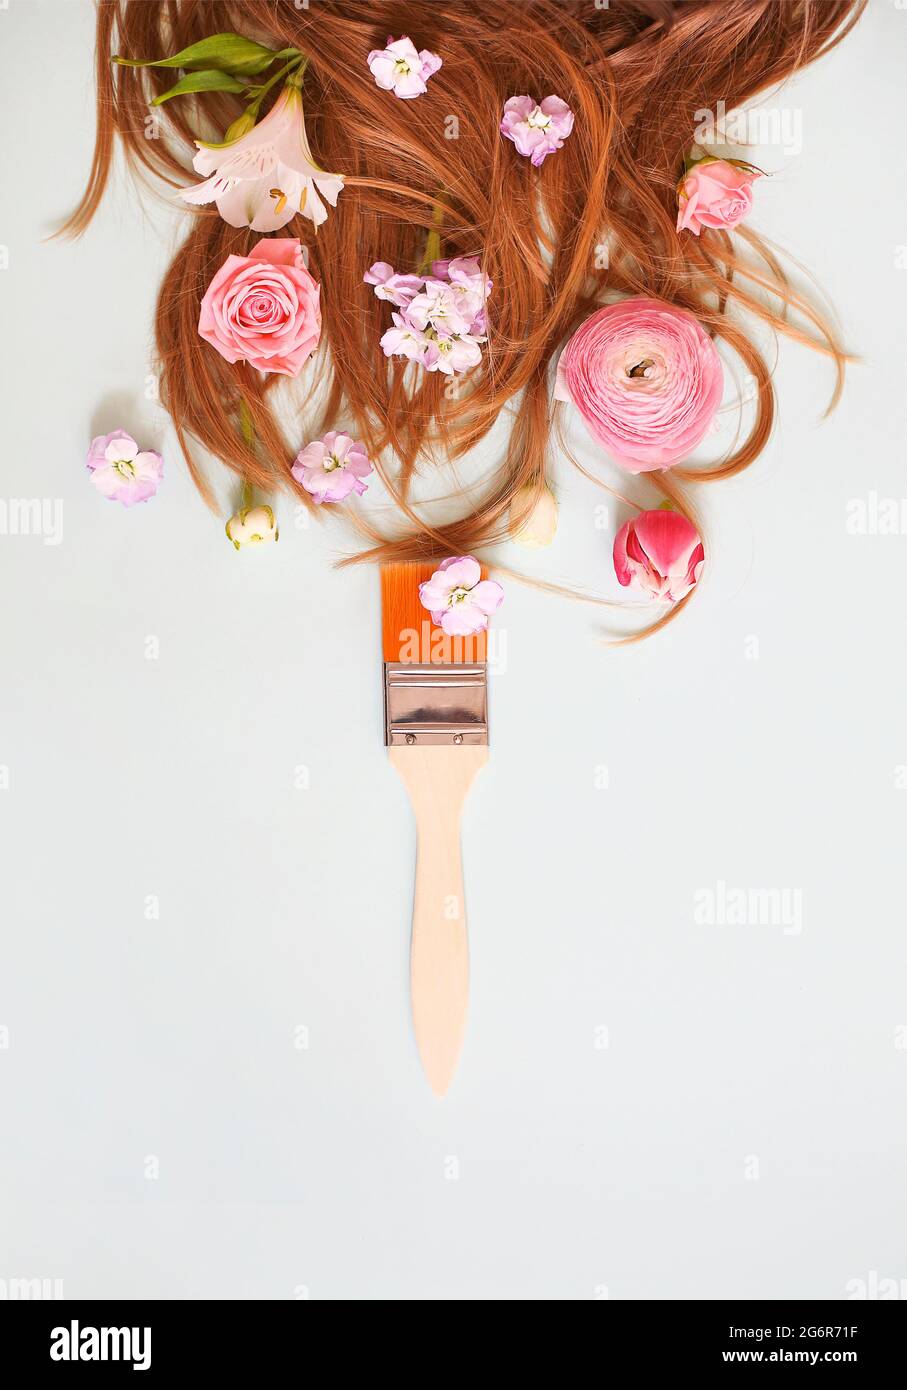 Vue de dessus du pinceau et des fleurs délicates placées près de longs cheveux de gingembre de la femme sur fond gris Banque D'Images